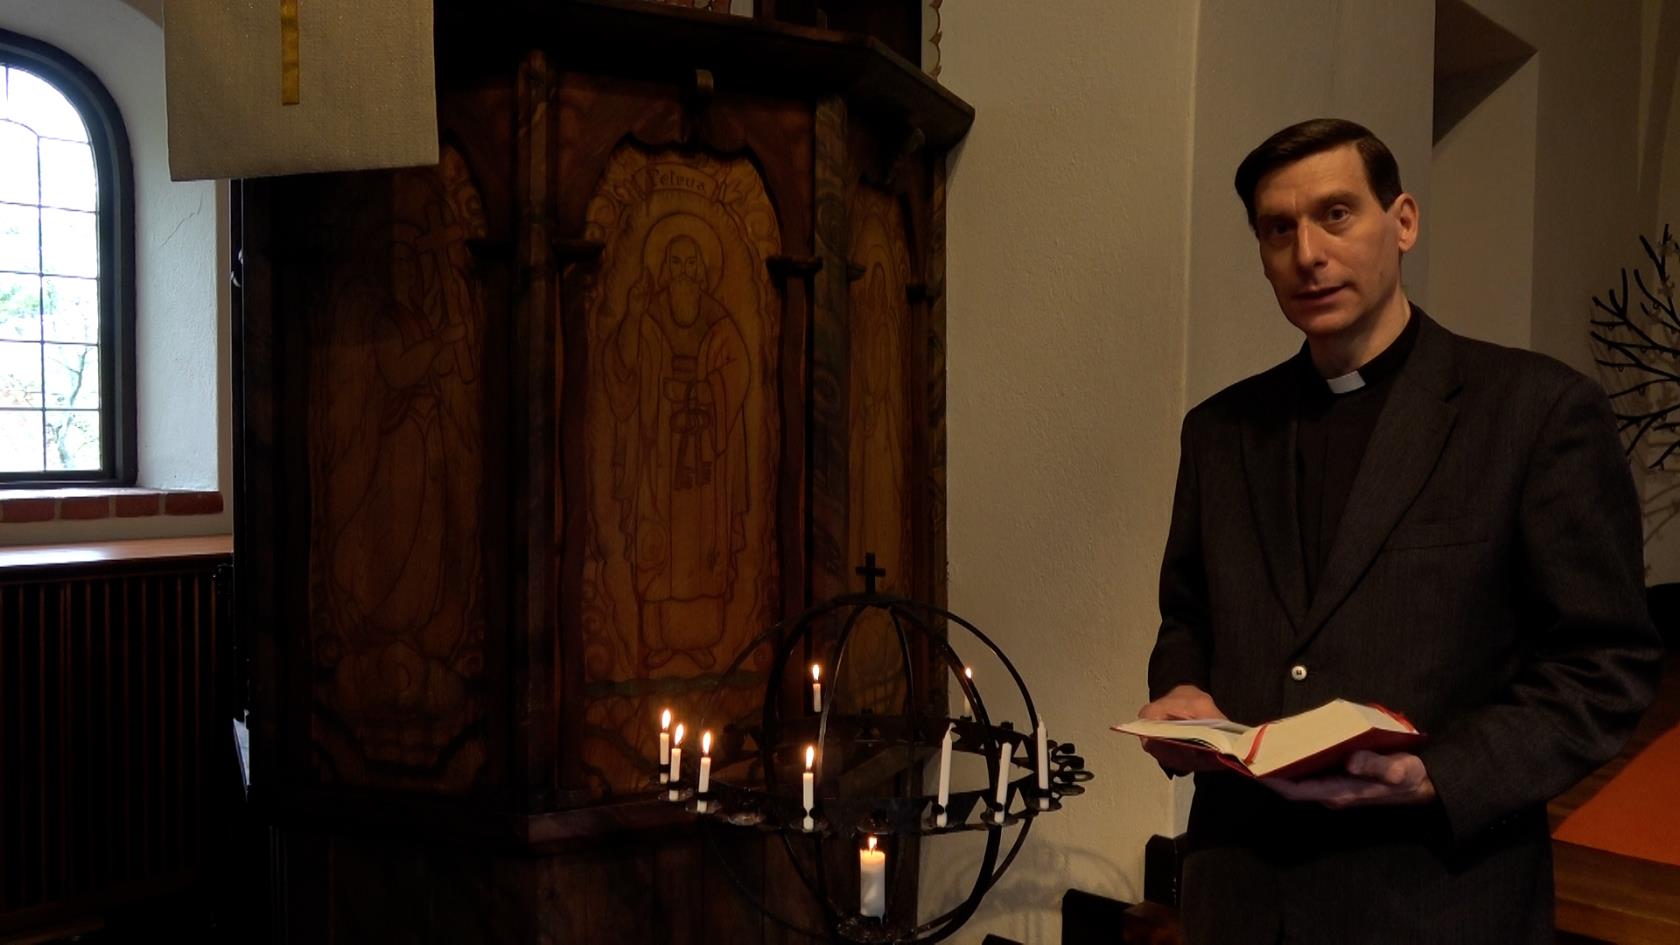 Prästen Stefan Gaspar vid ljusbäraren i Enskede kyrka